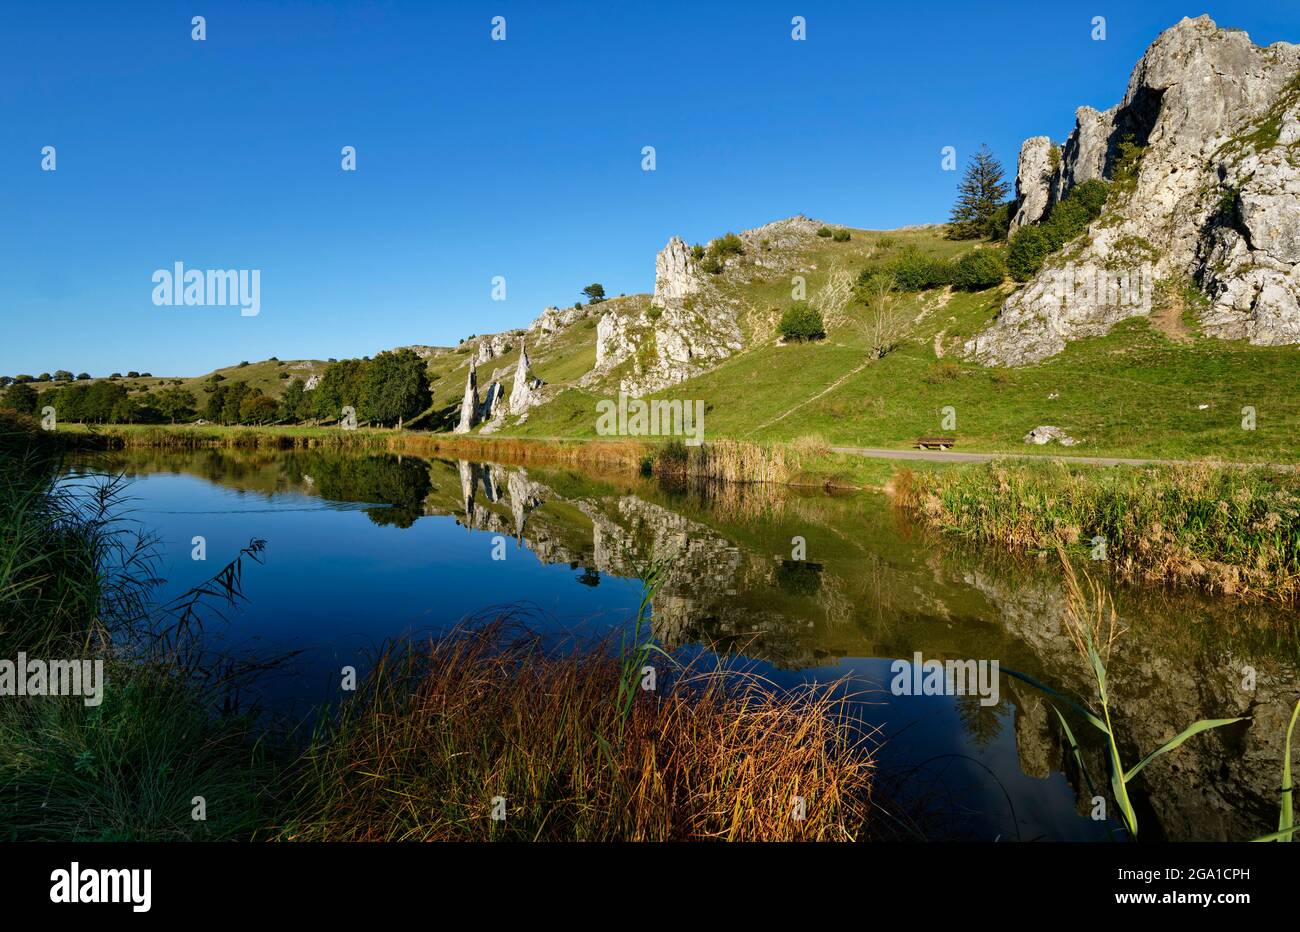 Pond in Eselsburg Valley near Herbrechtingen, rockformation 'Stony maiden' (Steinerne Jungfrauen) in the background, Baden-Württemberg, Germany Stock Photo